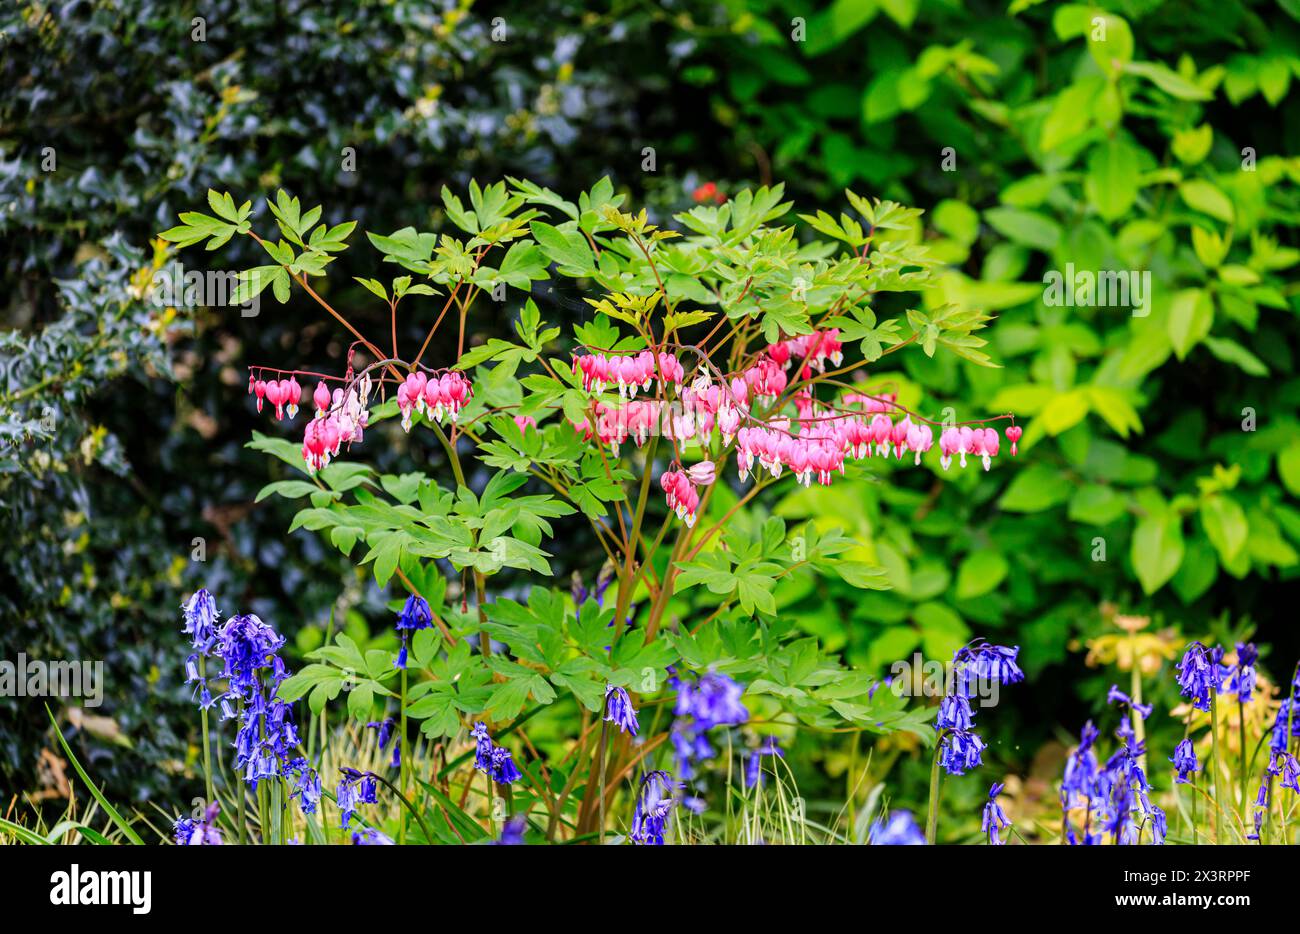 Blutende Herzpflanze (Lamprocapnos spectabilis) in der Blüte vor dem Hintergrund von Blauglocken im RHS Garden Wisley, Surrey, Südosten Englands im Frühjahr Stockfoto